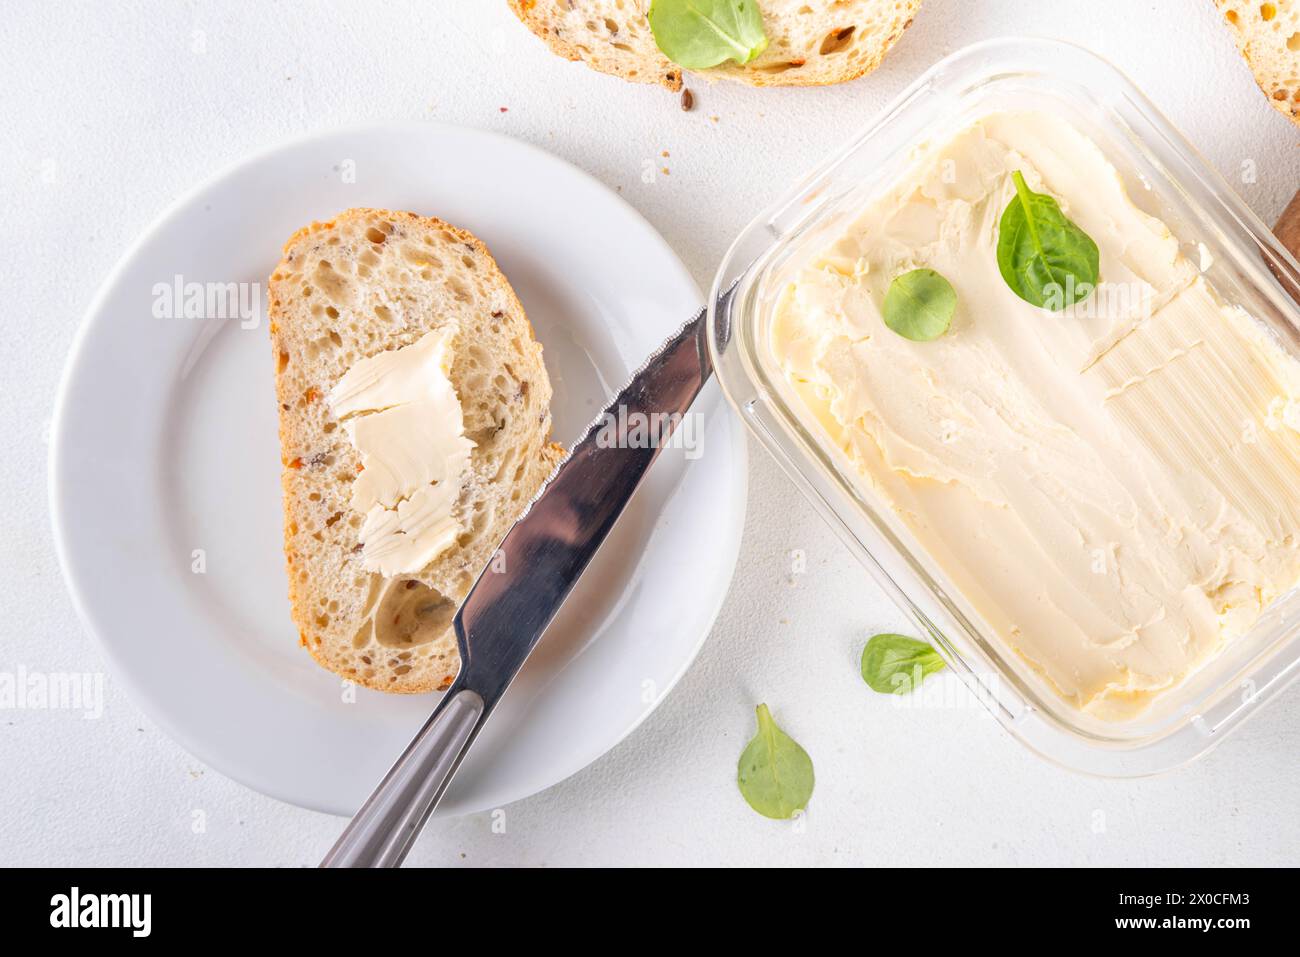 Beurre végétalien maison, crémeux non laitier, beurre alternatif à base de plantes avec de la feuille de soja, et pain cuit à la maison sur fond de table blanc de cuisine Banque D'Images